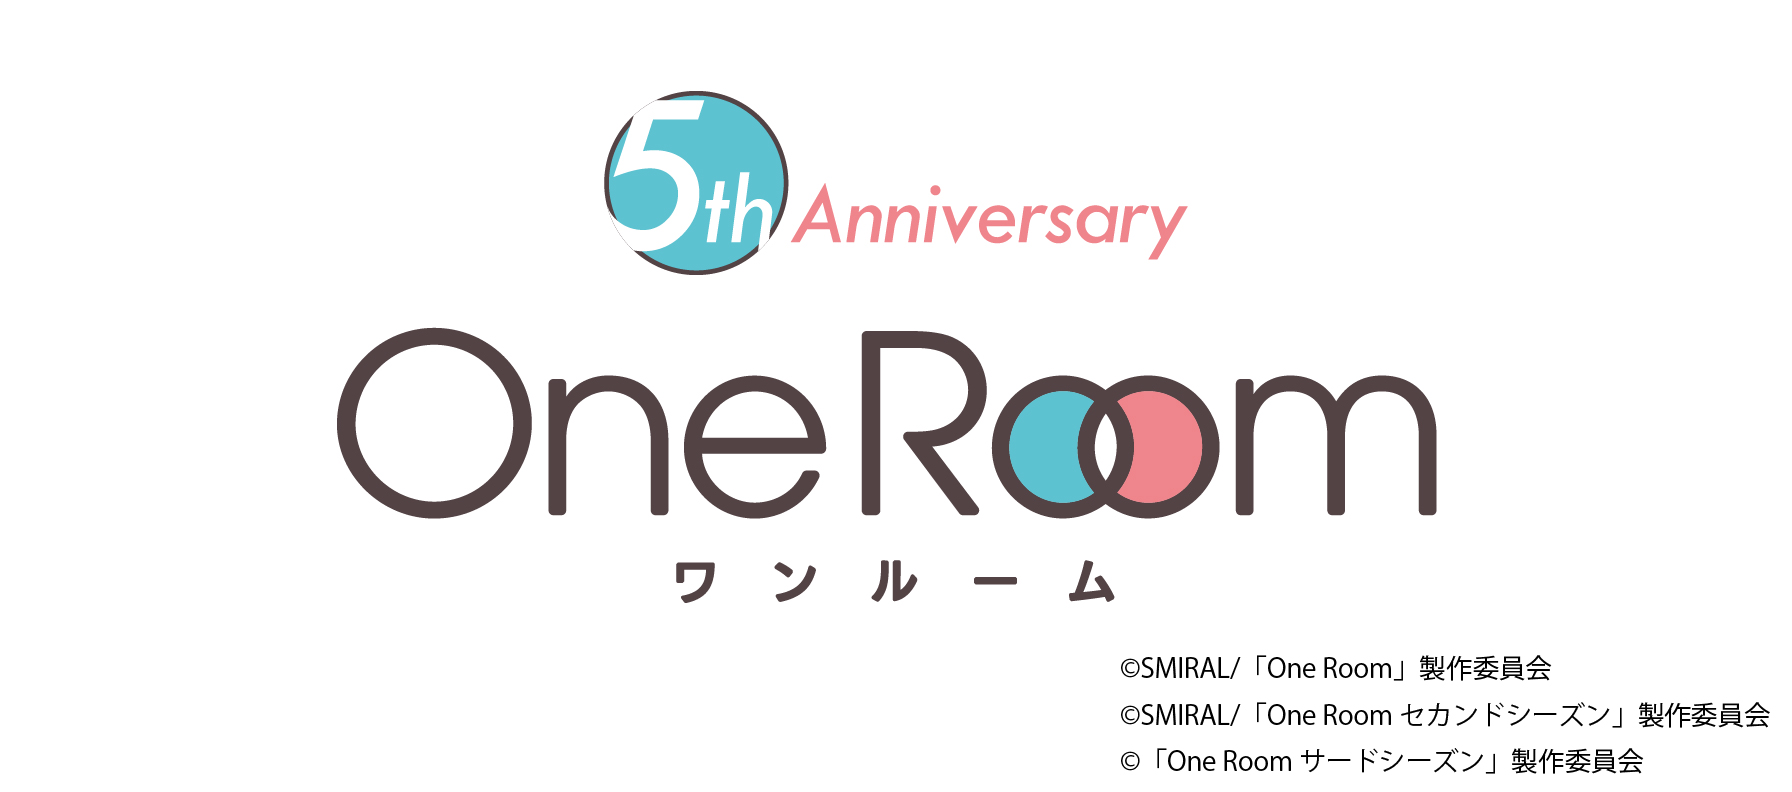 OneRoom5周年